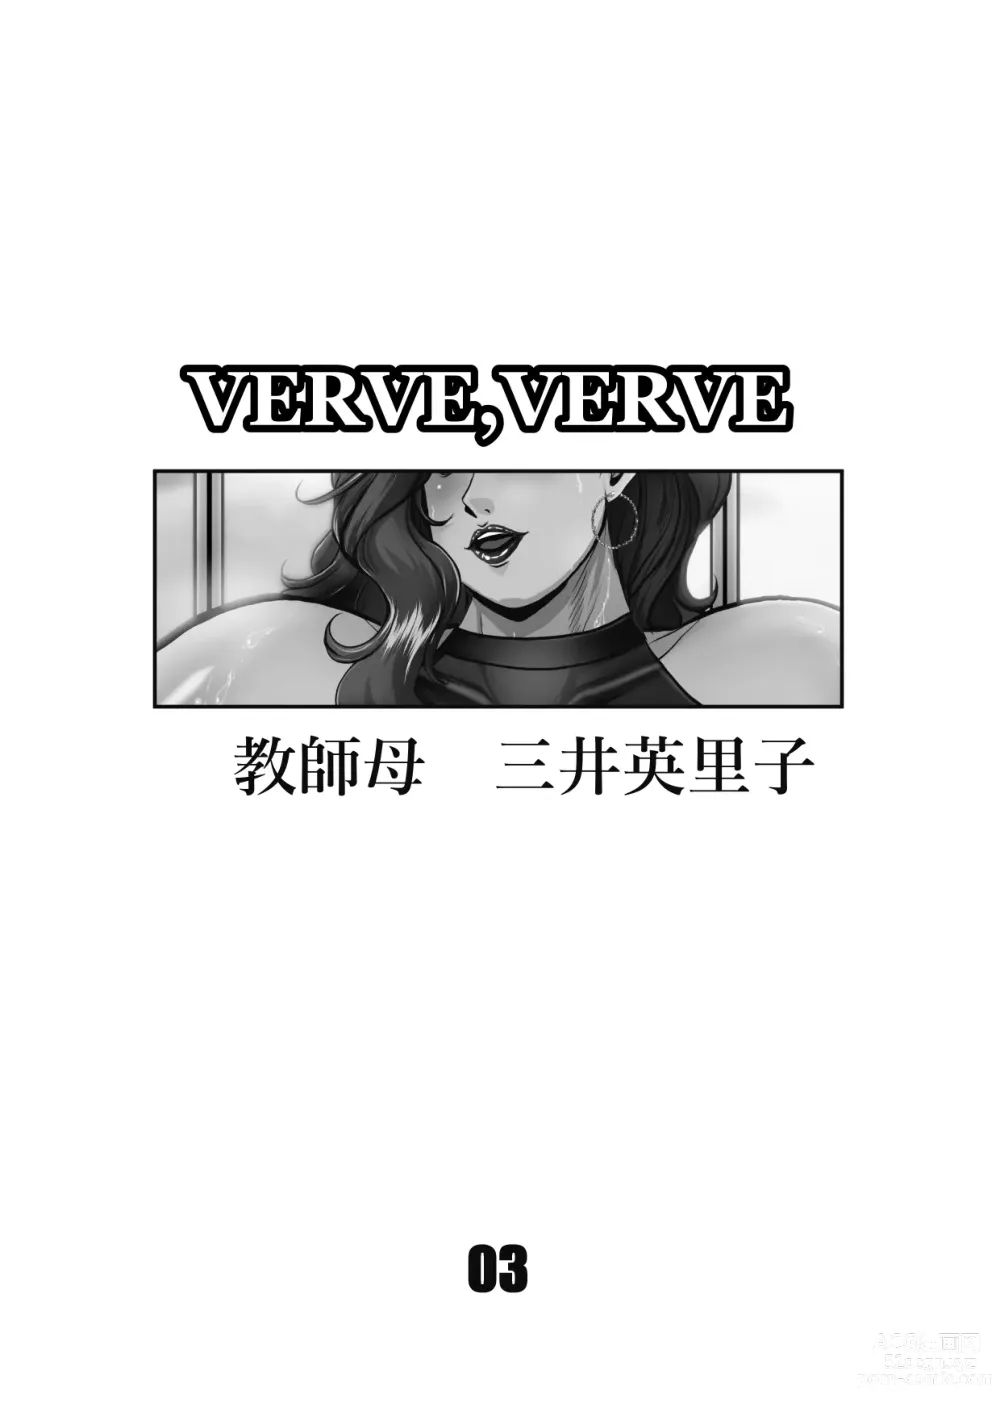 Page 3 of doujinshi VERVE, VERVE